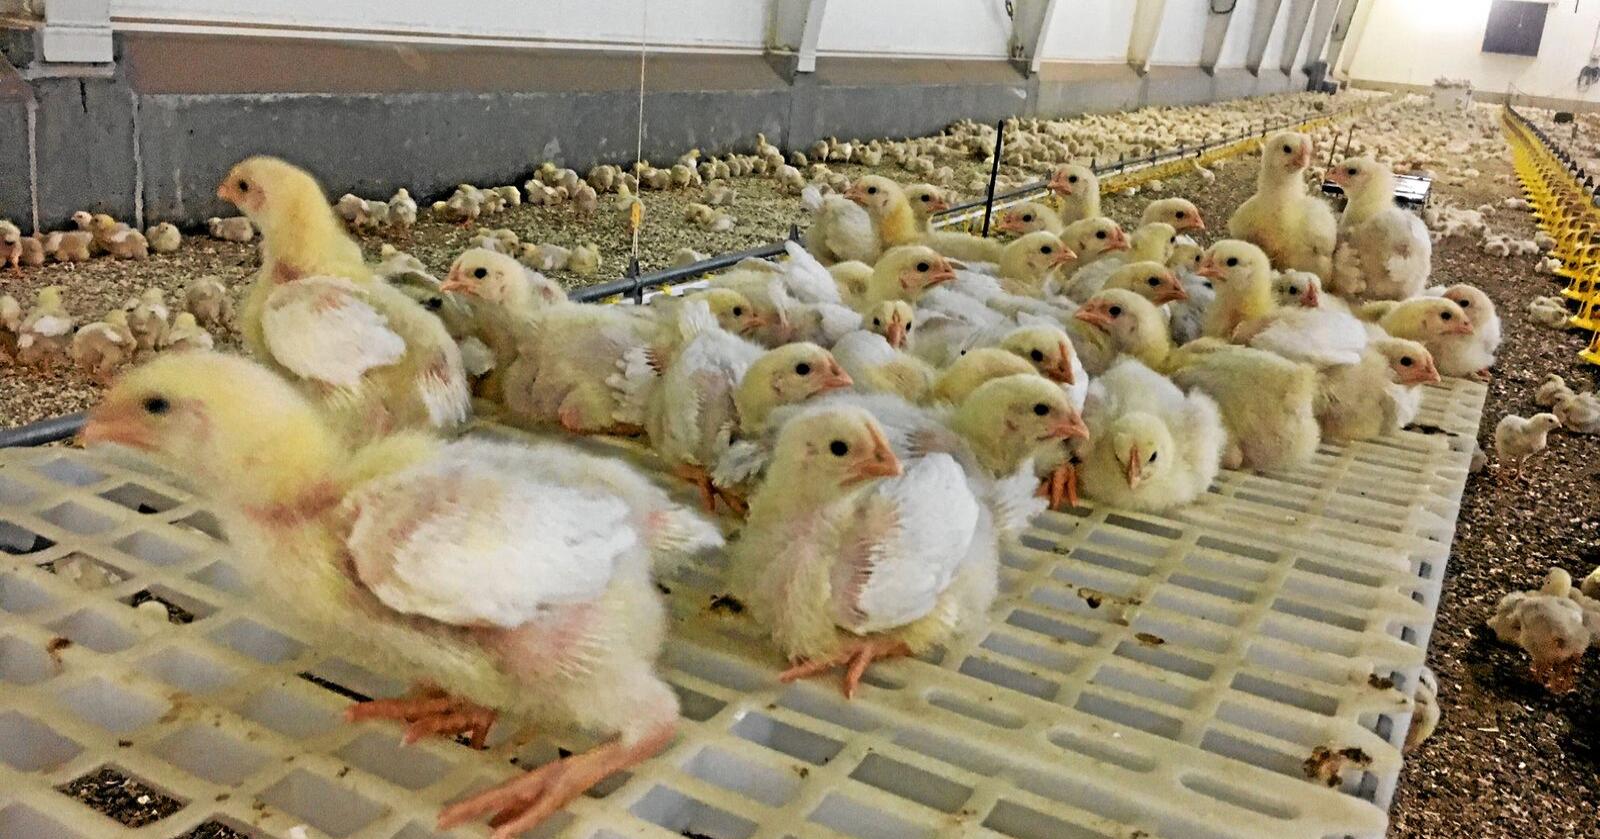 I 2018 ble kyllingrasen Hubbard introdusert. I år hyller en av Mattilsynets inspektører den nye hybriden som også produseres av hennes ektemann. Foto: Kato Nykvist/ Nationen